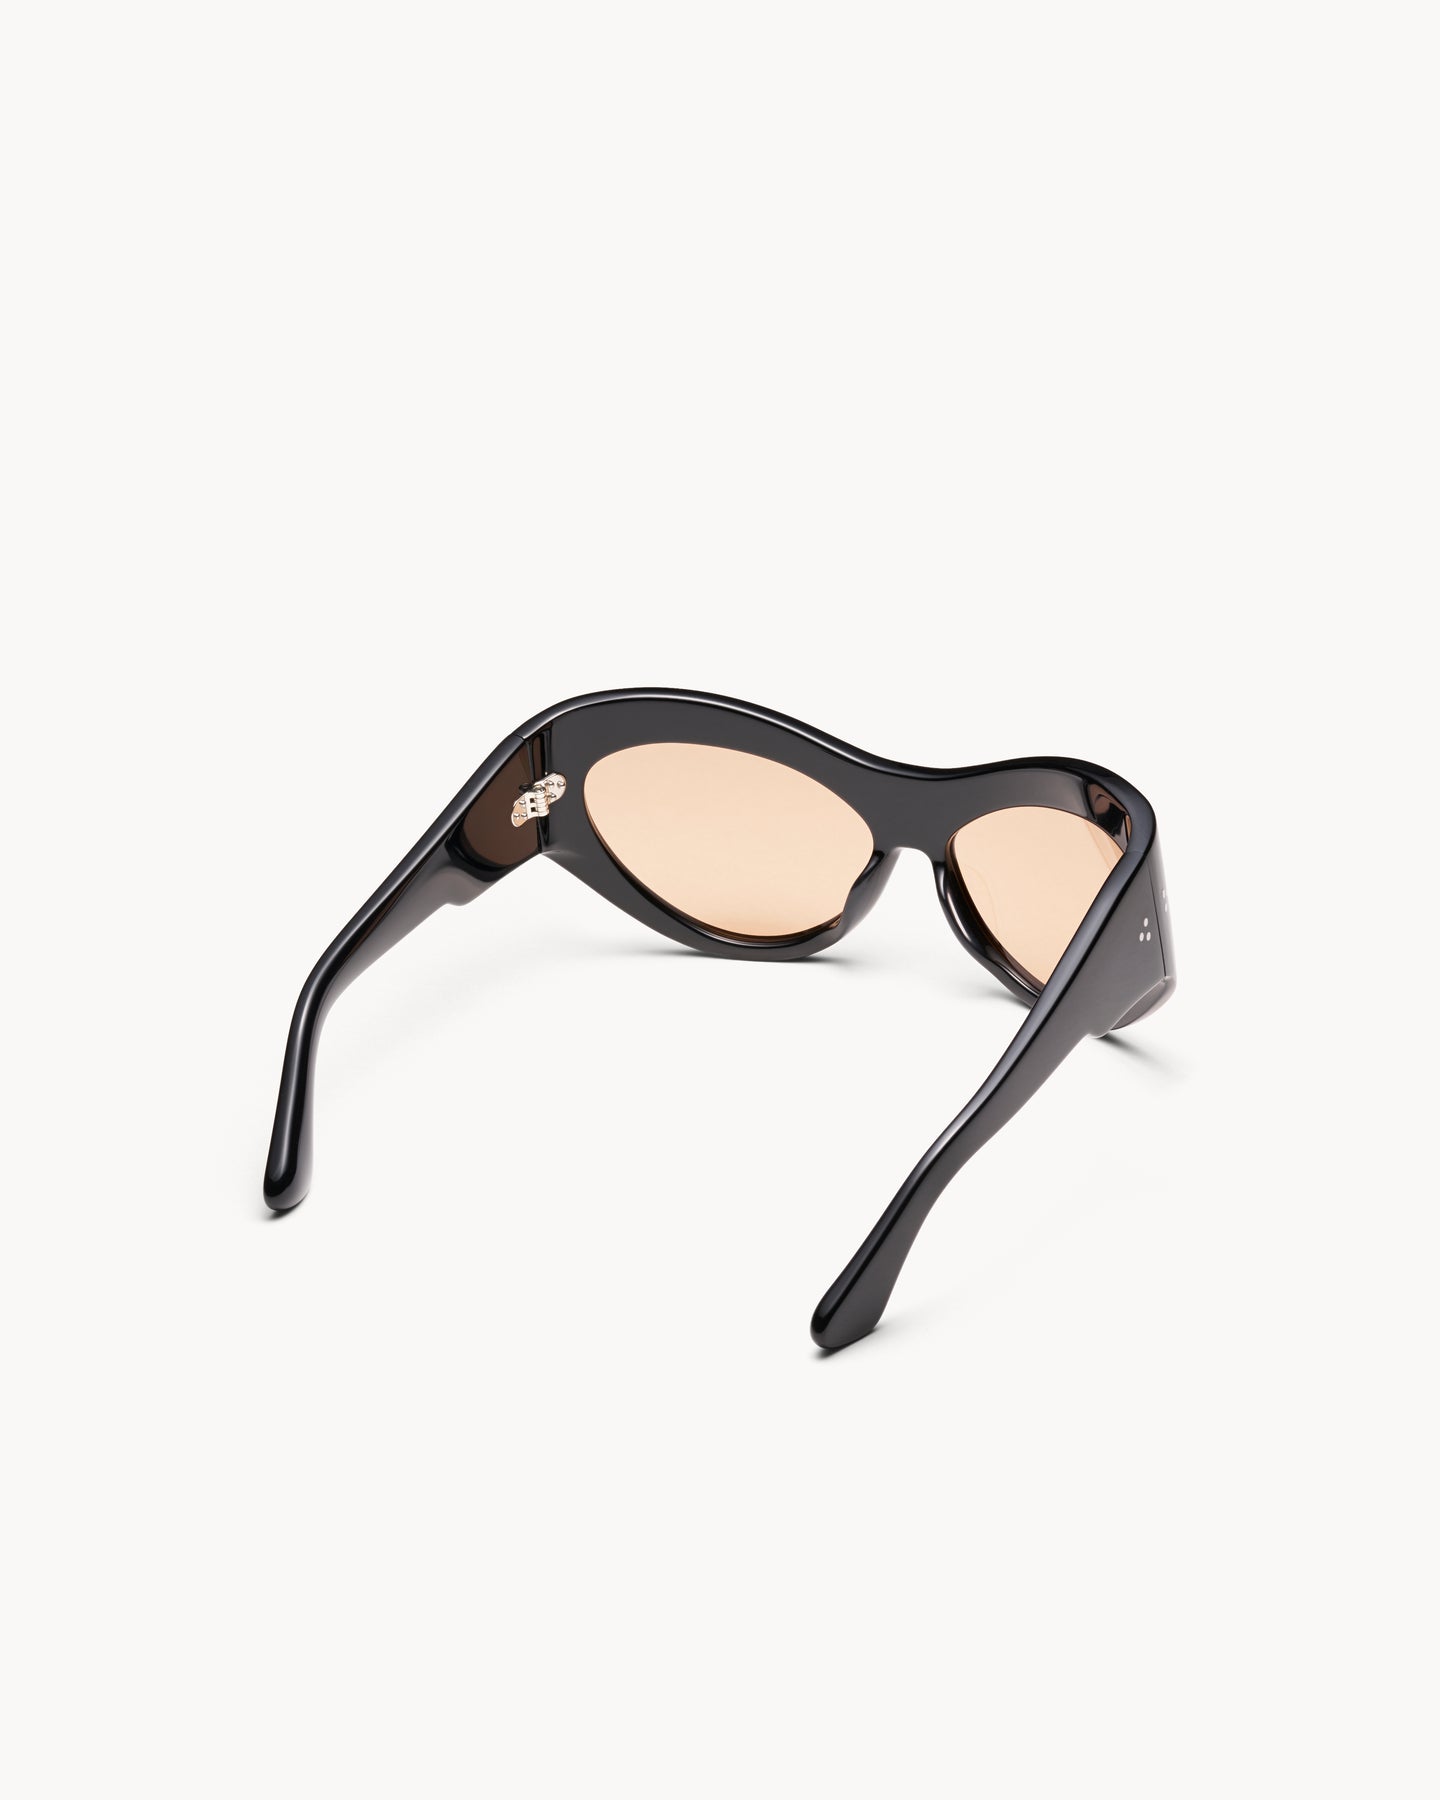 Port Tanger Darya Sunglasses in Black Acetate and Amber Lenses 3